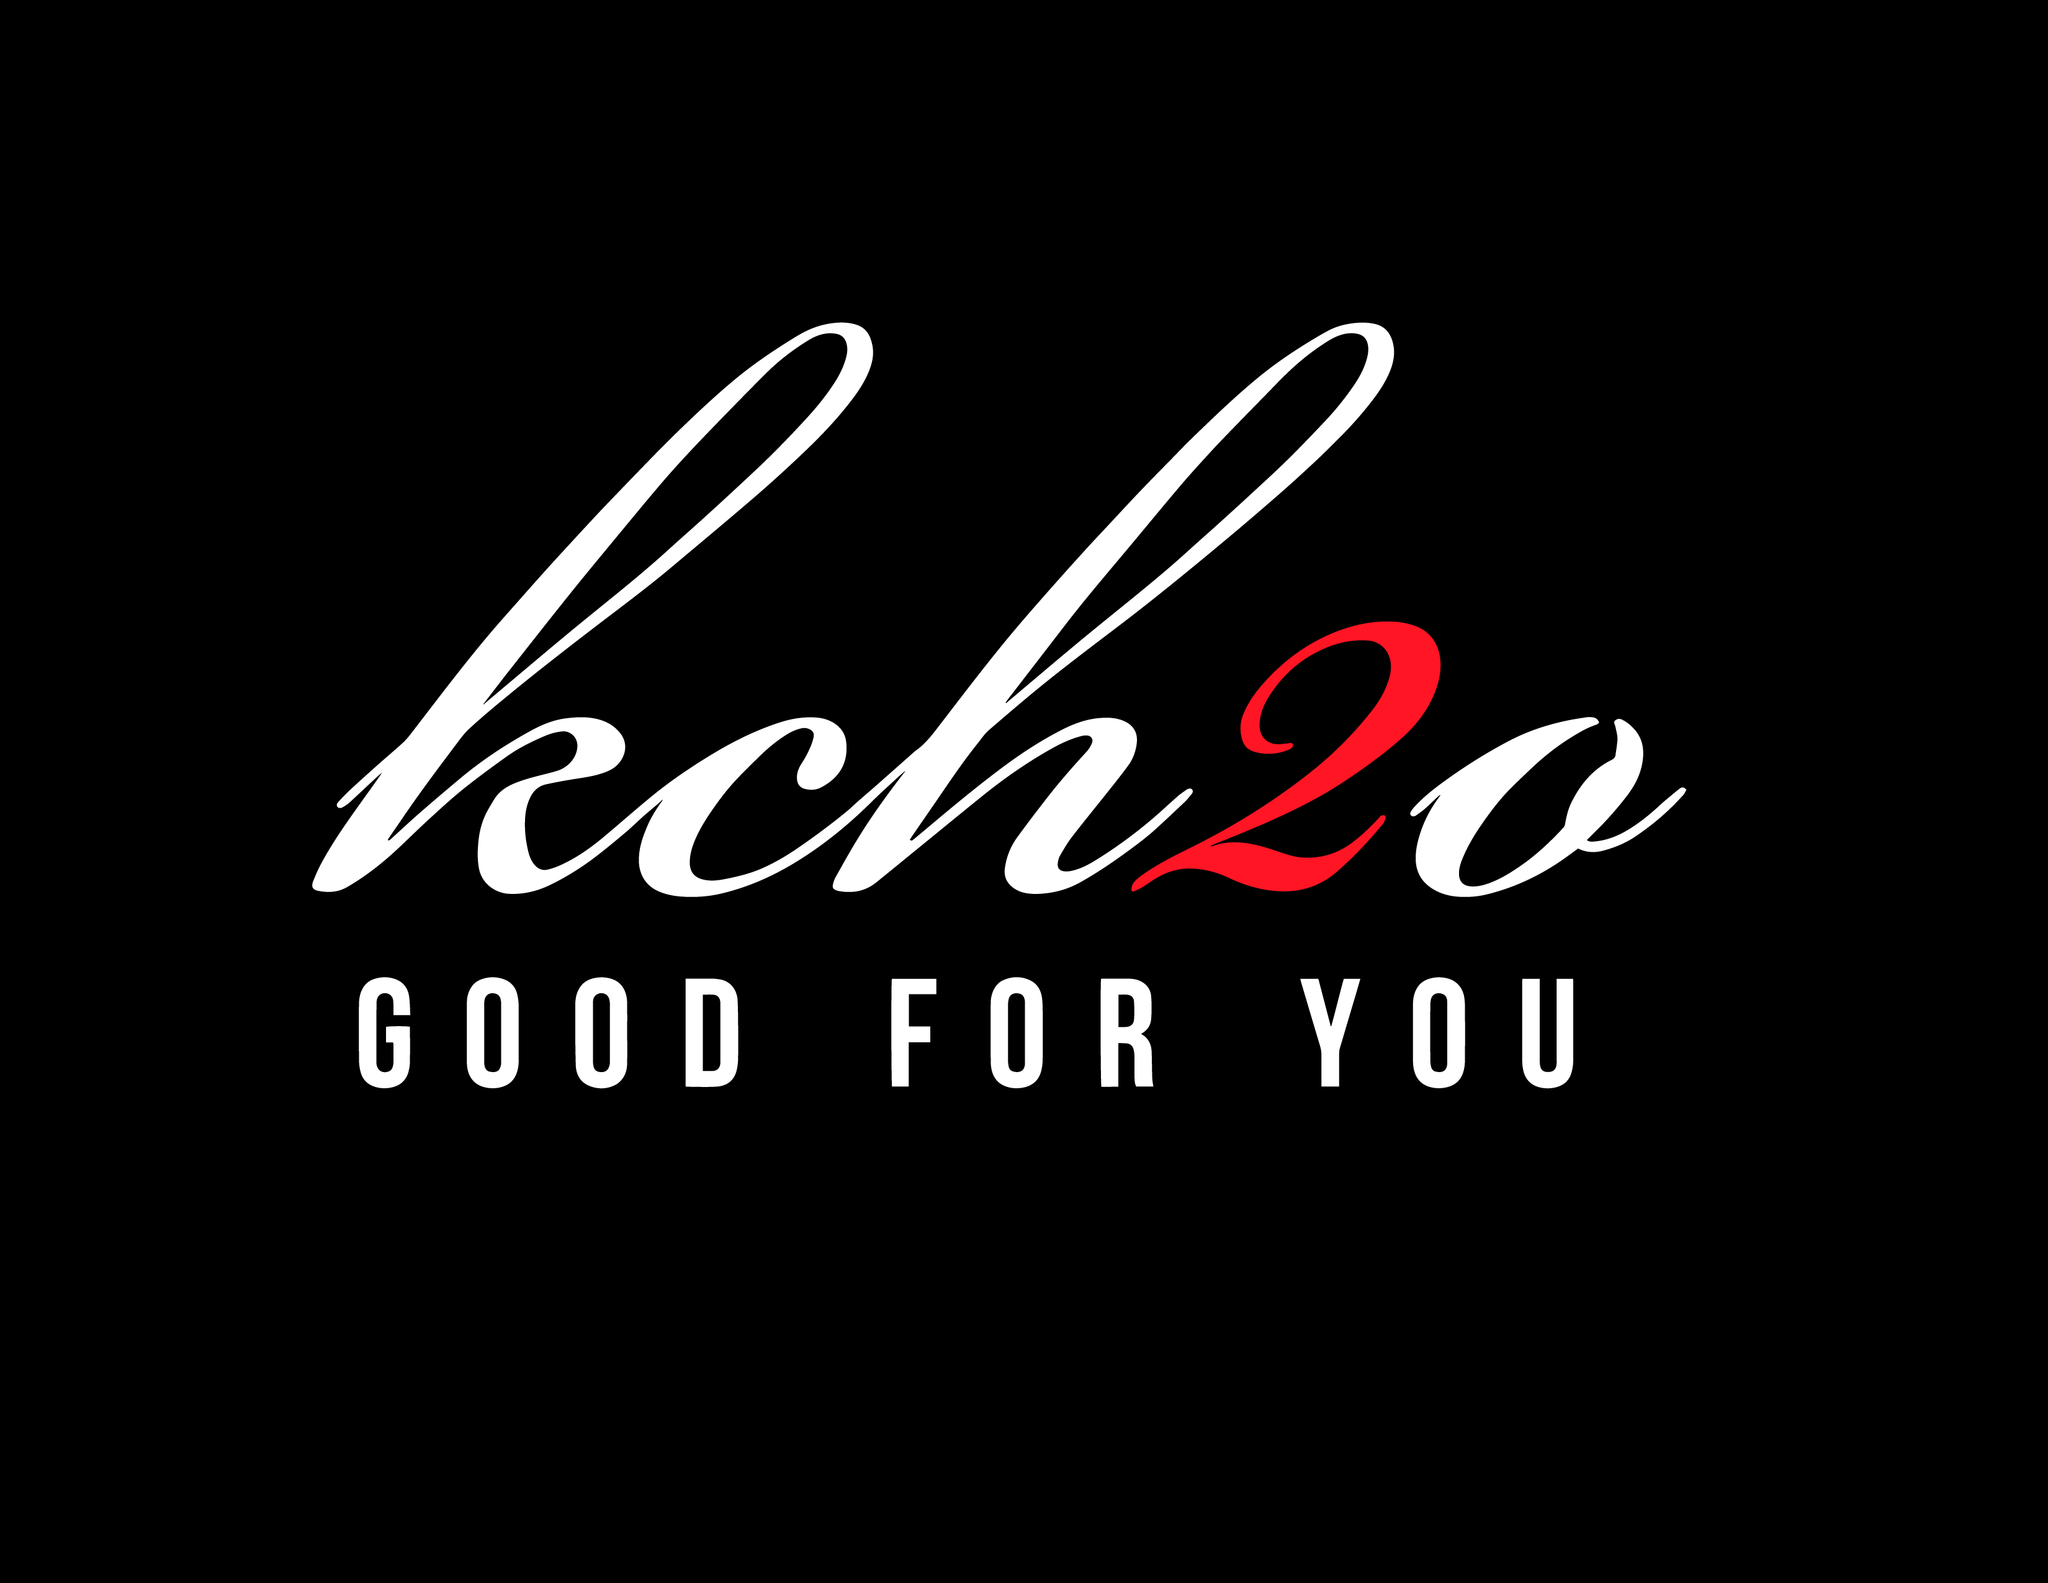 Kch2o Good For You Women's T-Shirt